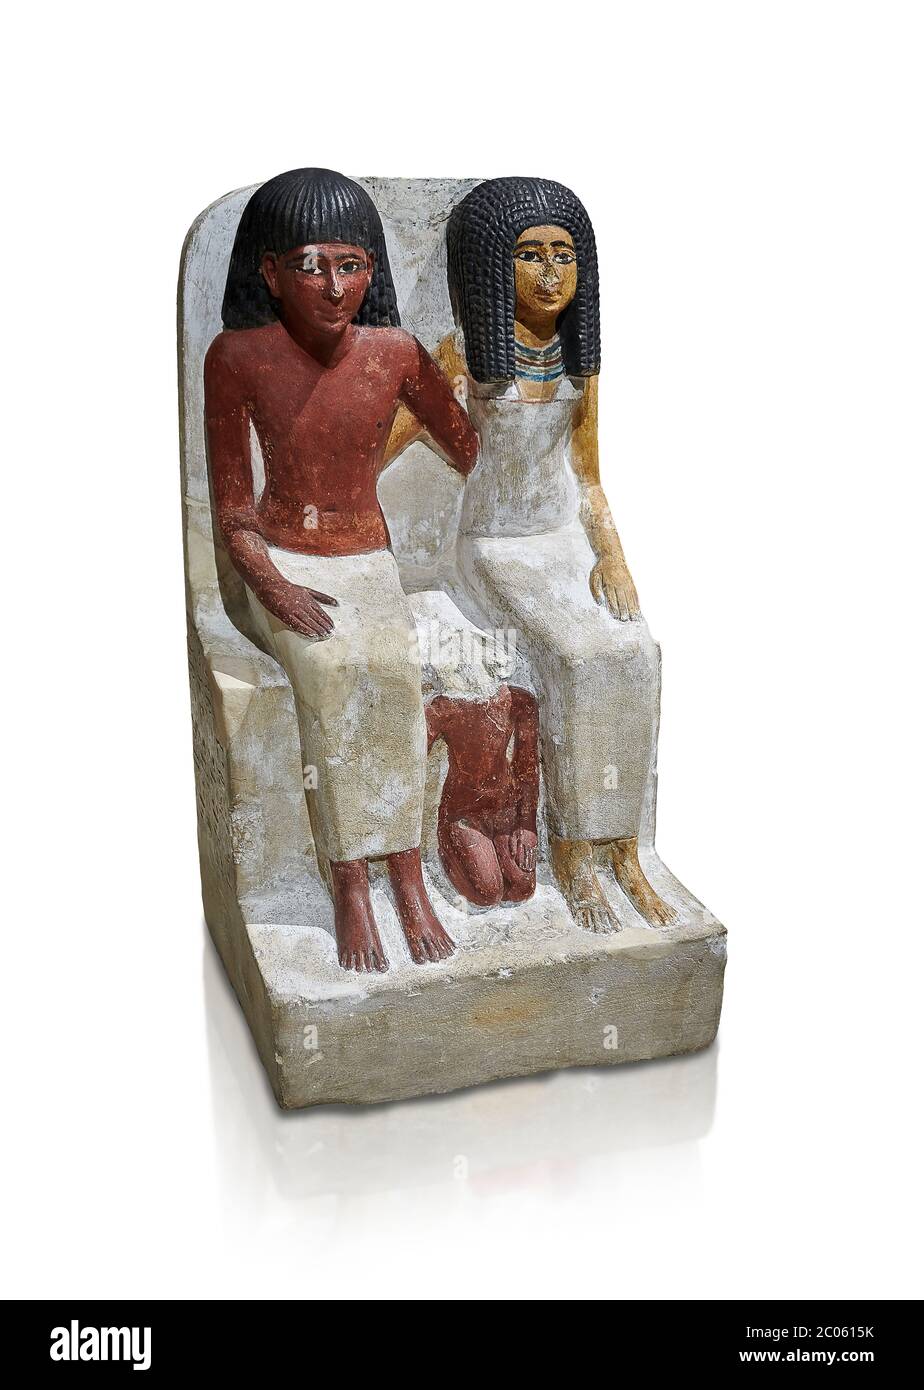 Alte ägyptische Statue von Pawer und seiner Frau Mut, New Kingdom, 18. Dynastie, (1480-1390 v. Chr.), Thebes Nekropole. Ägyptisches Museum, Turin. Weißer Hintergrund Stockfoto